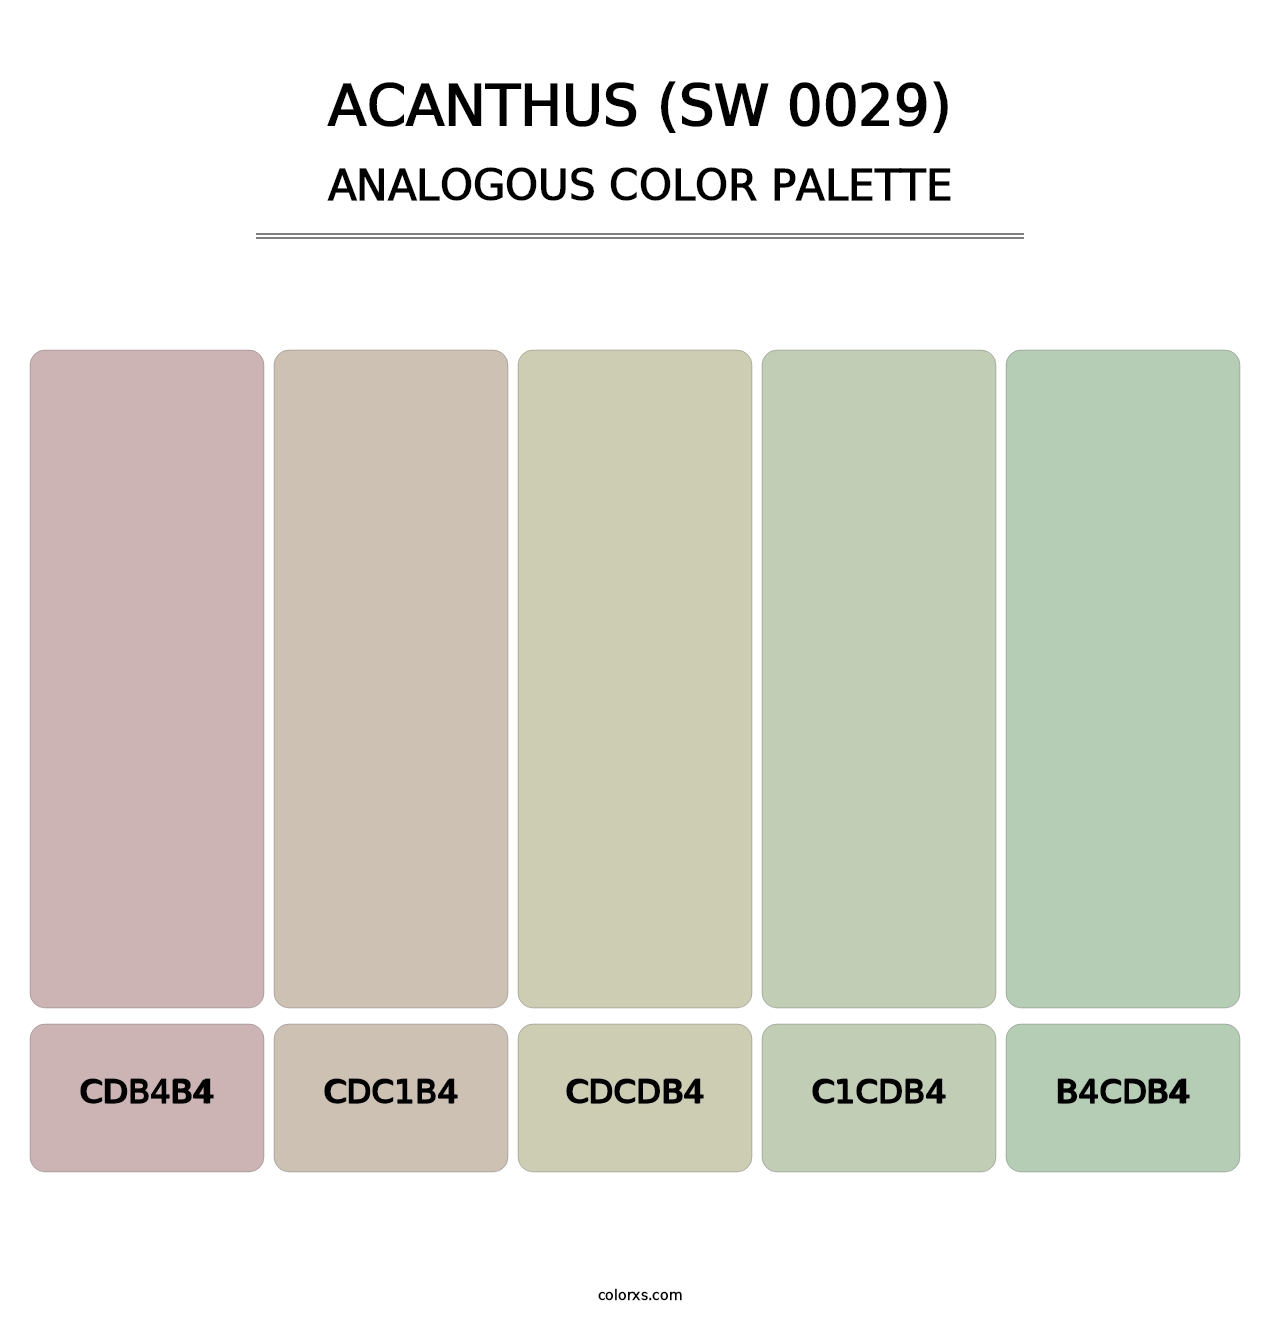 Acanthus (SW 0029) - Analogous Color Palette